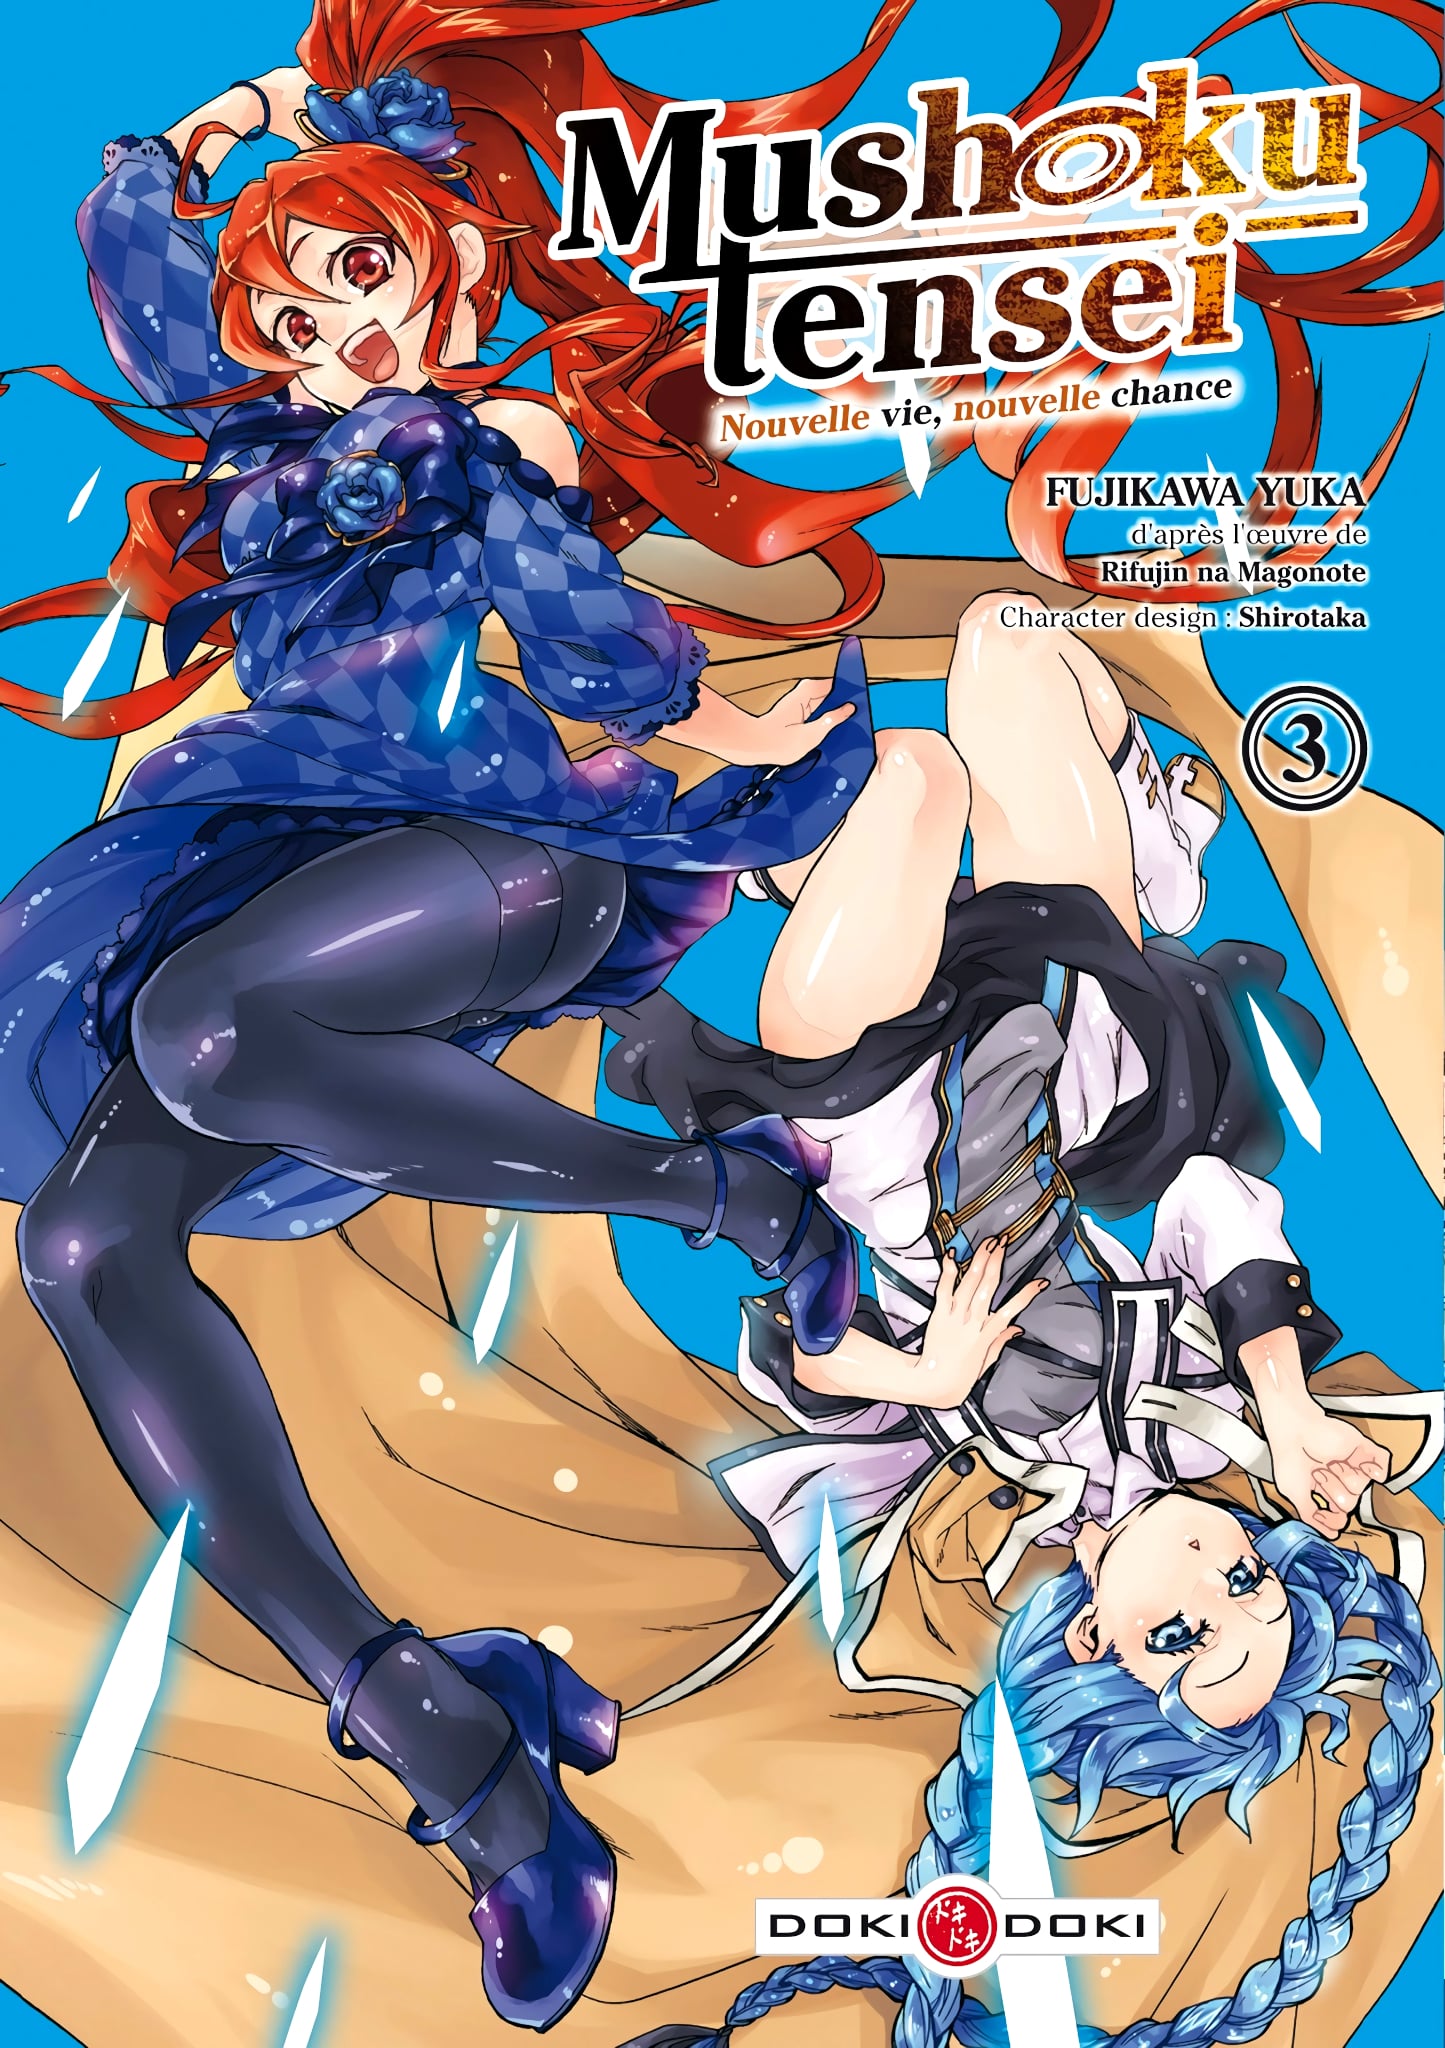 Tome 3 du manga Mushoku Tensei